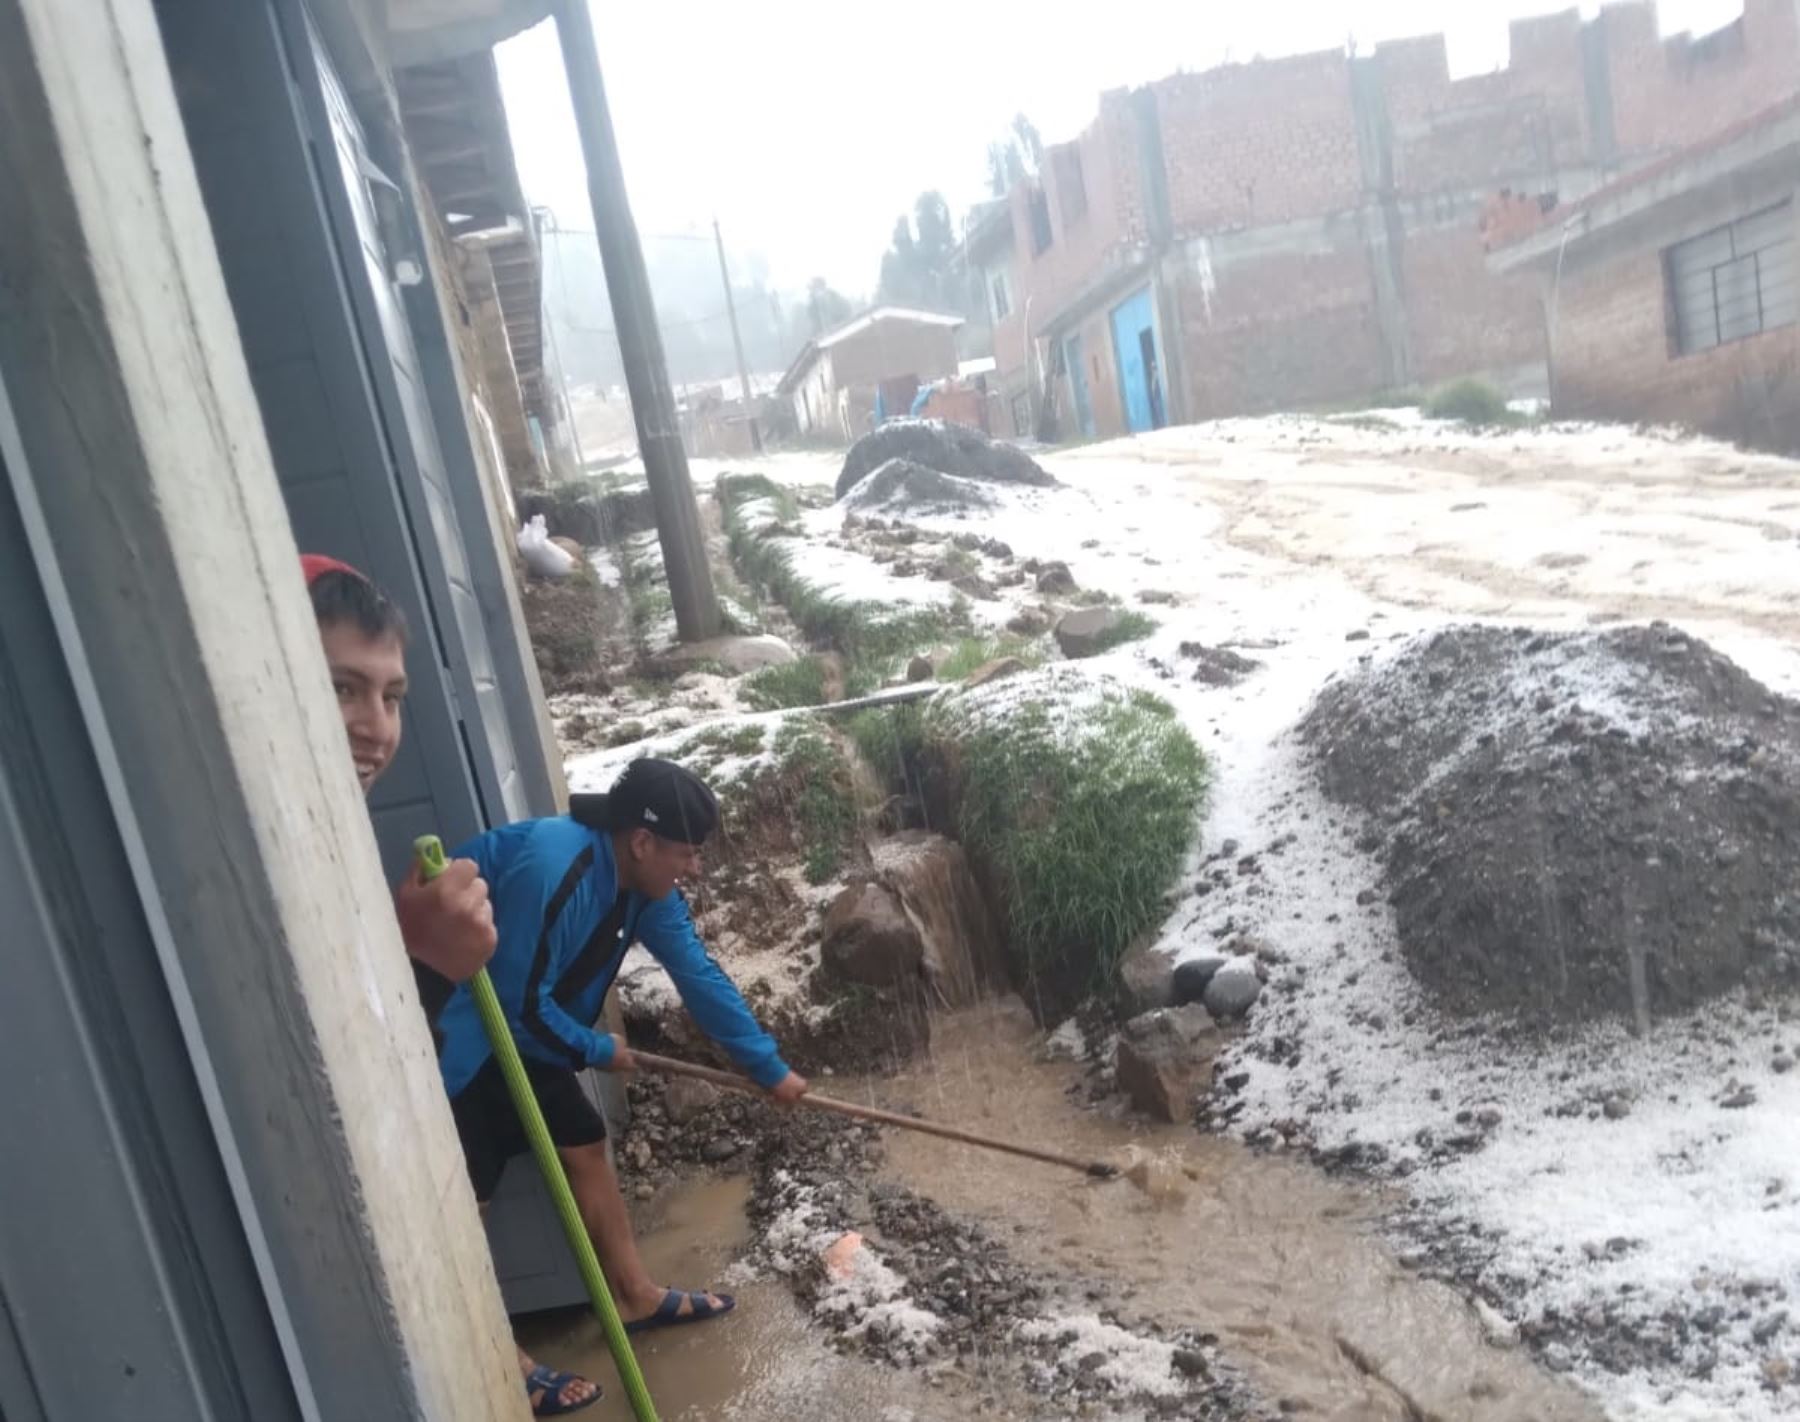 Lluvias intensas y granizada causan daños en 15 viviendas ubicadas en el centro poblado de Paccha, en la provincia de Huaraz, en Áncash.